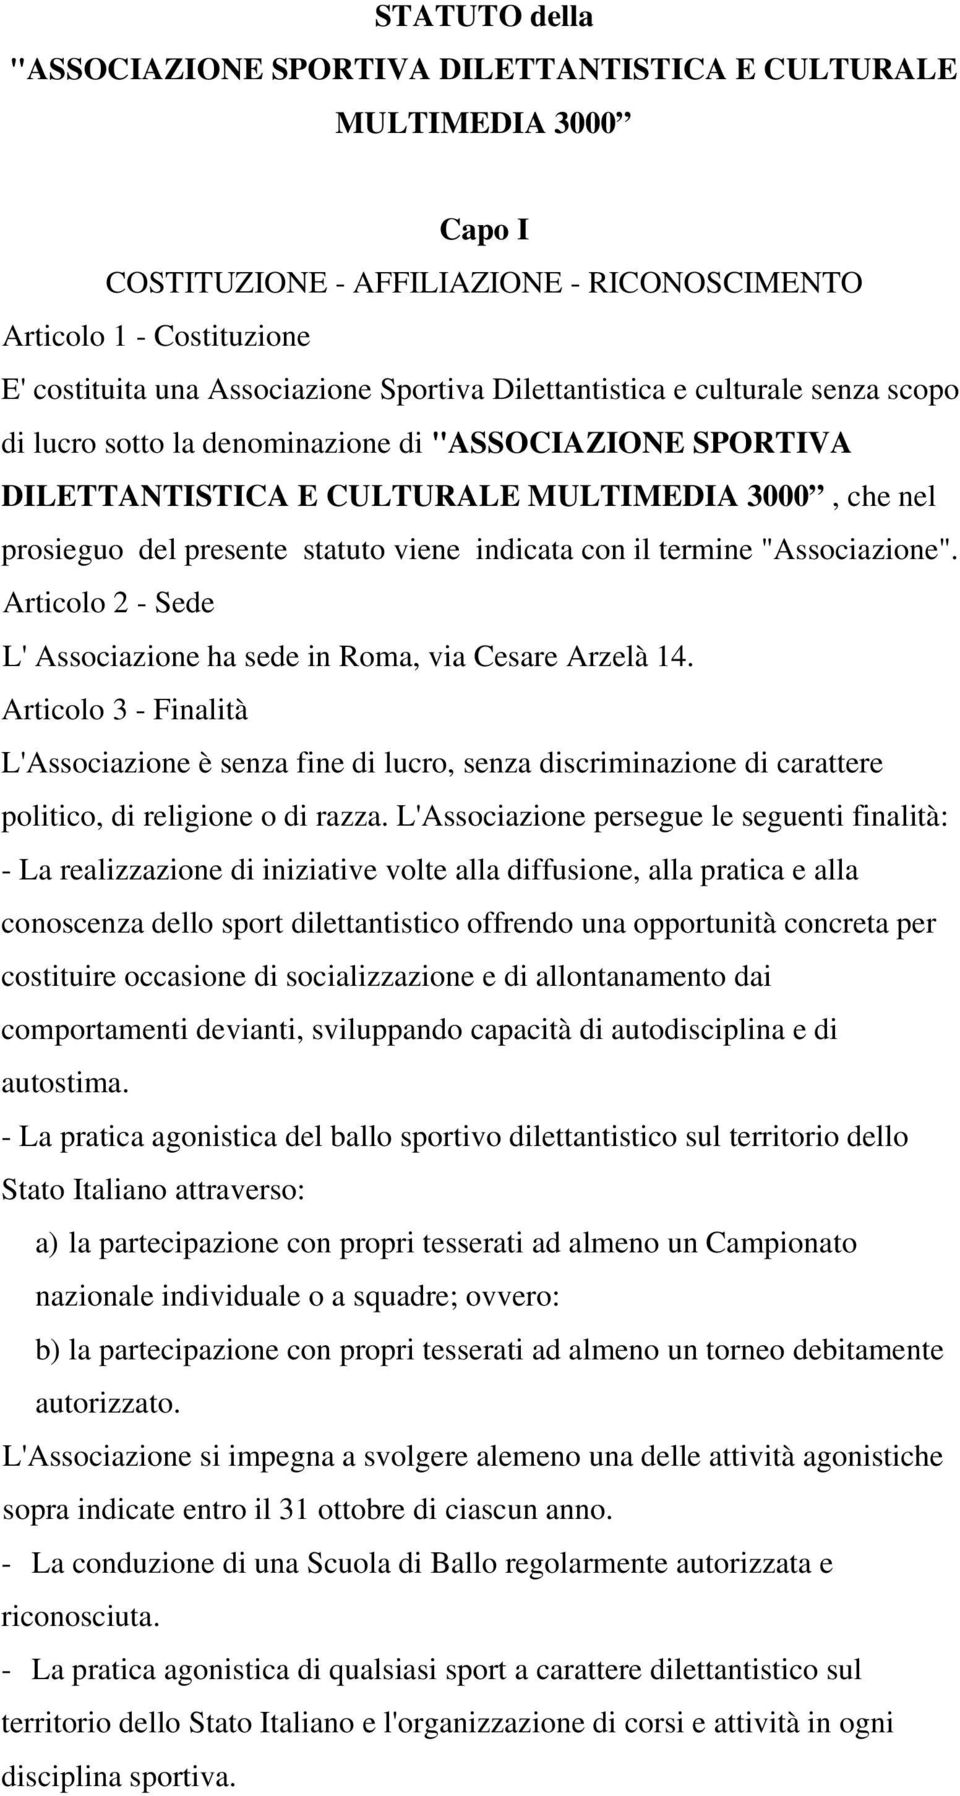 con il termine "Associazione". Articolo 2 - Sede L' Associazione ha sede in Roma, via Cesare Arzelà 14.